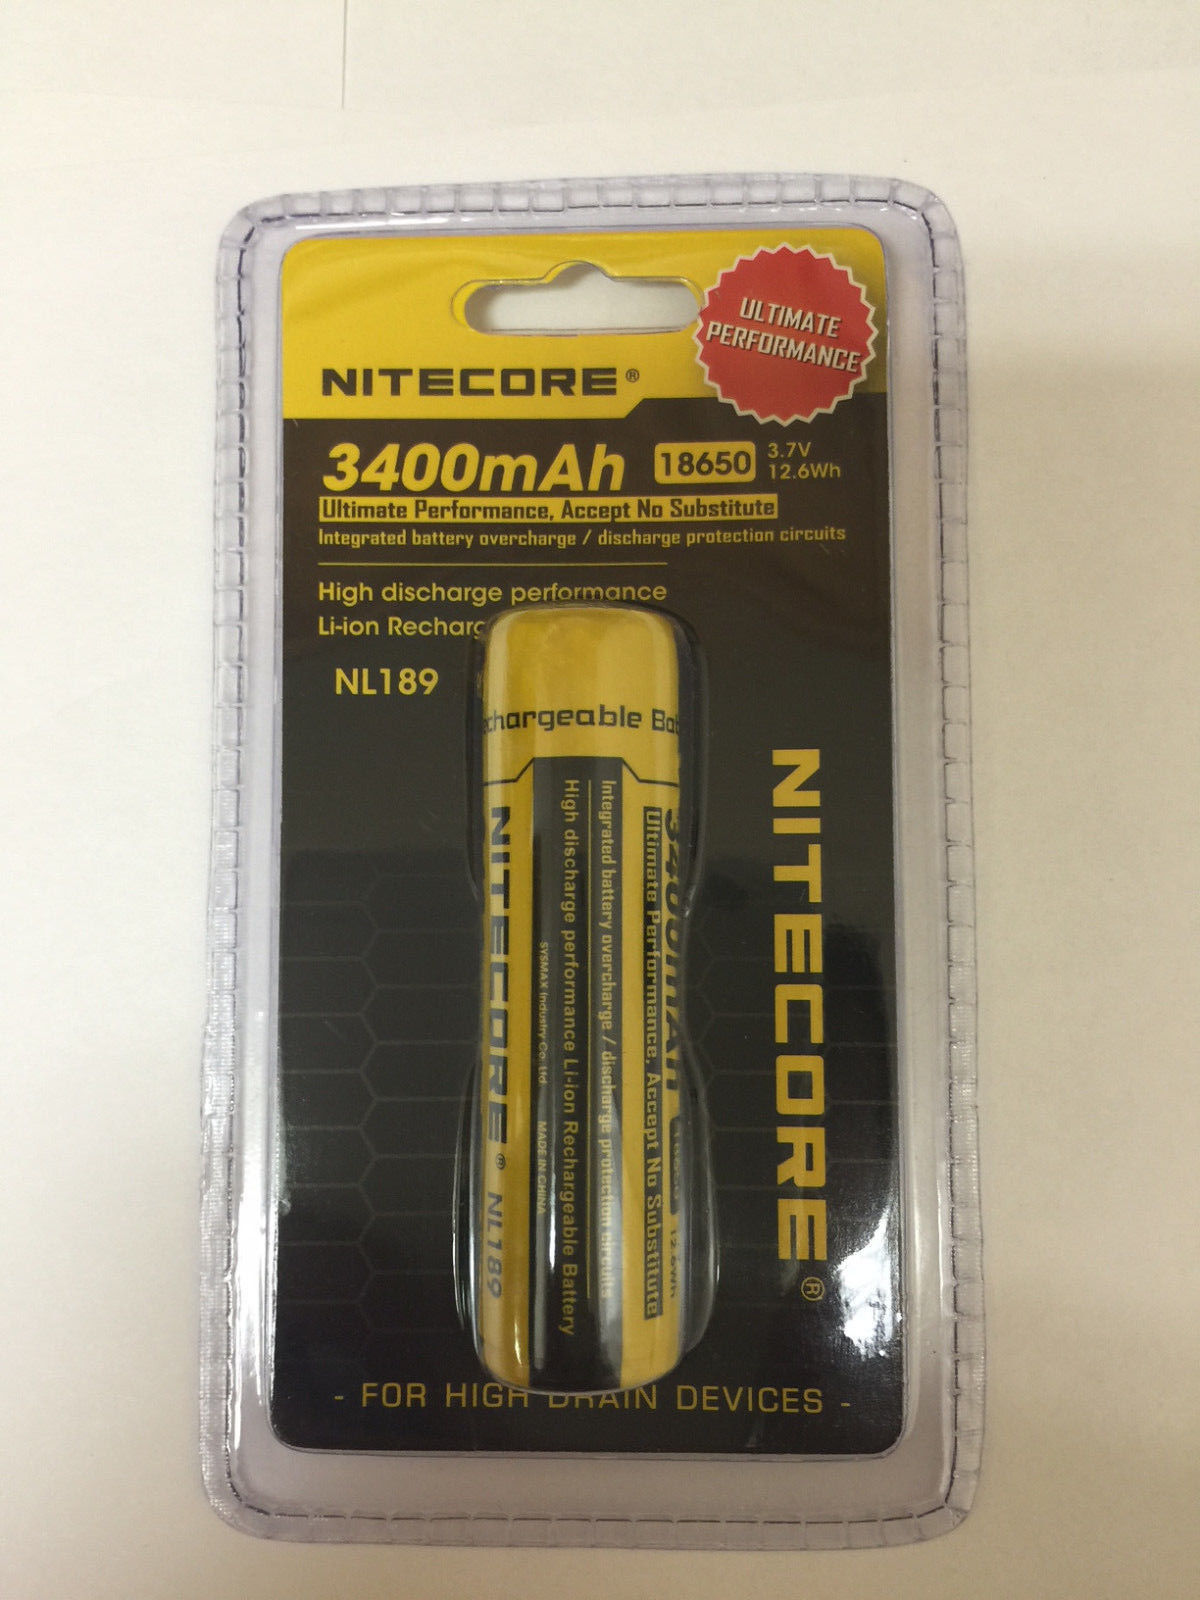 Nitecore 18650 nl189 3400 mAh batería Recargable Li-ion 3.7v 12.6 wh